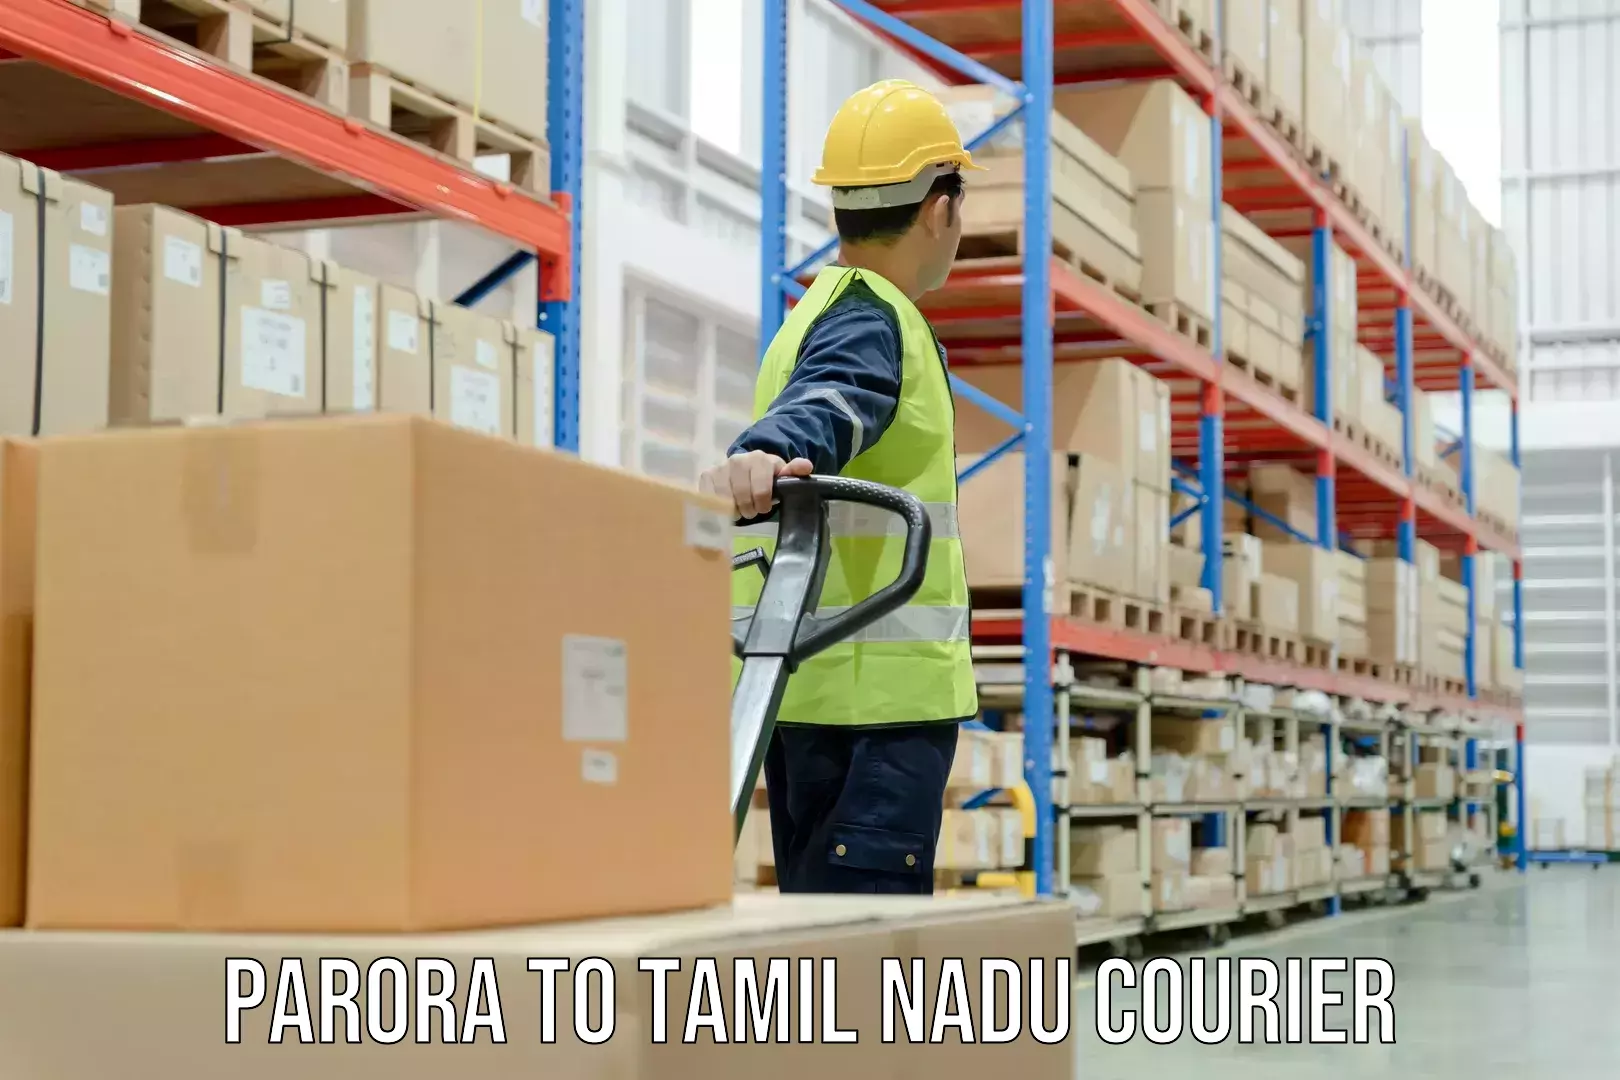 Innovative courier solutions Parora to Tamil Nadu